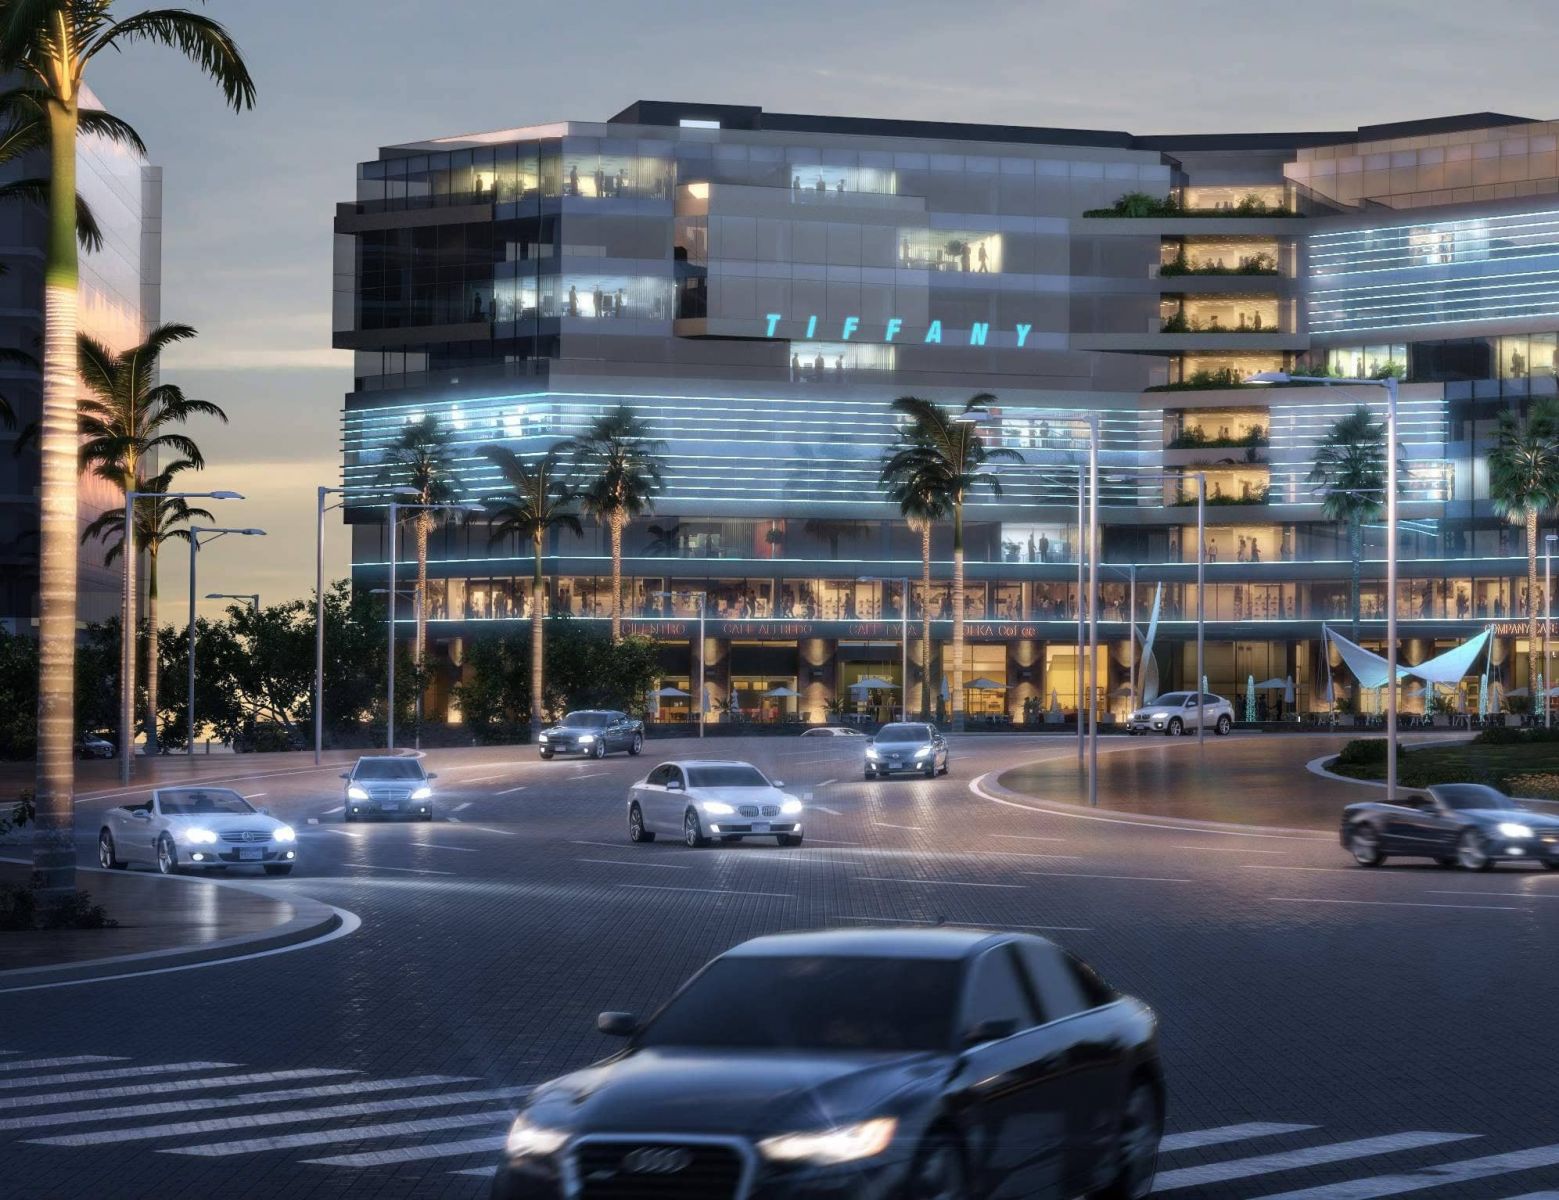 مول تيفاني العاصمة الإدارية الجديدة Pillarz العقارية – Tiffany Mall New Capital